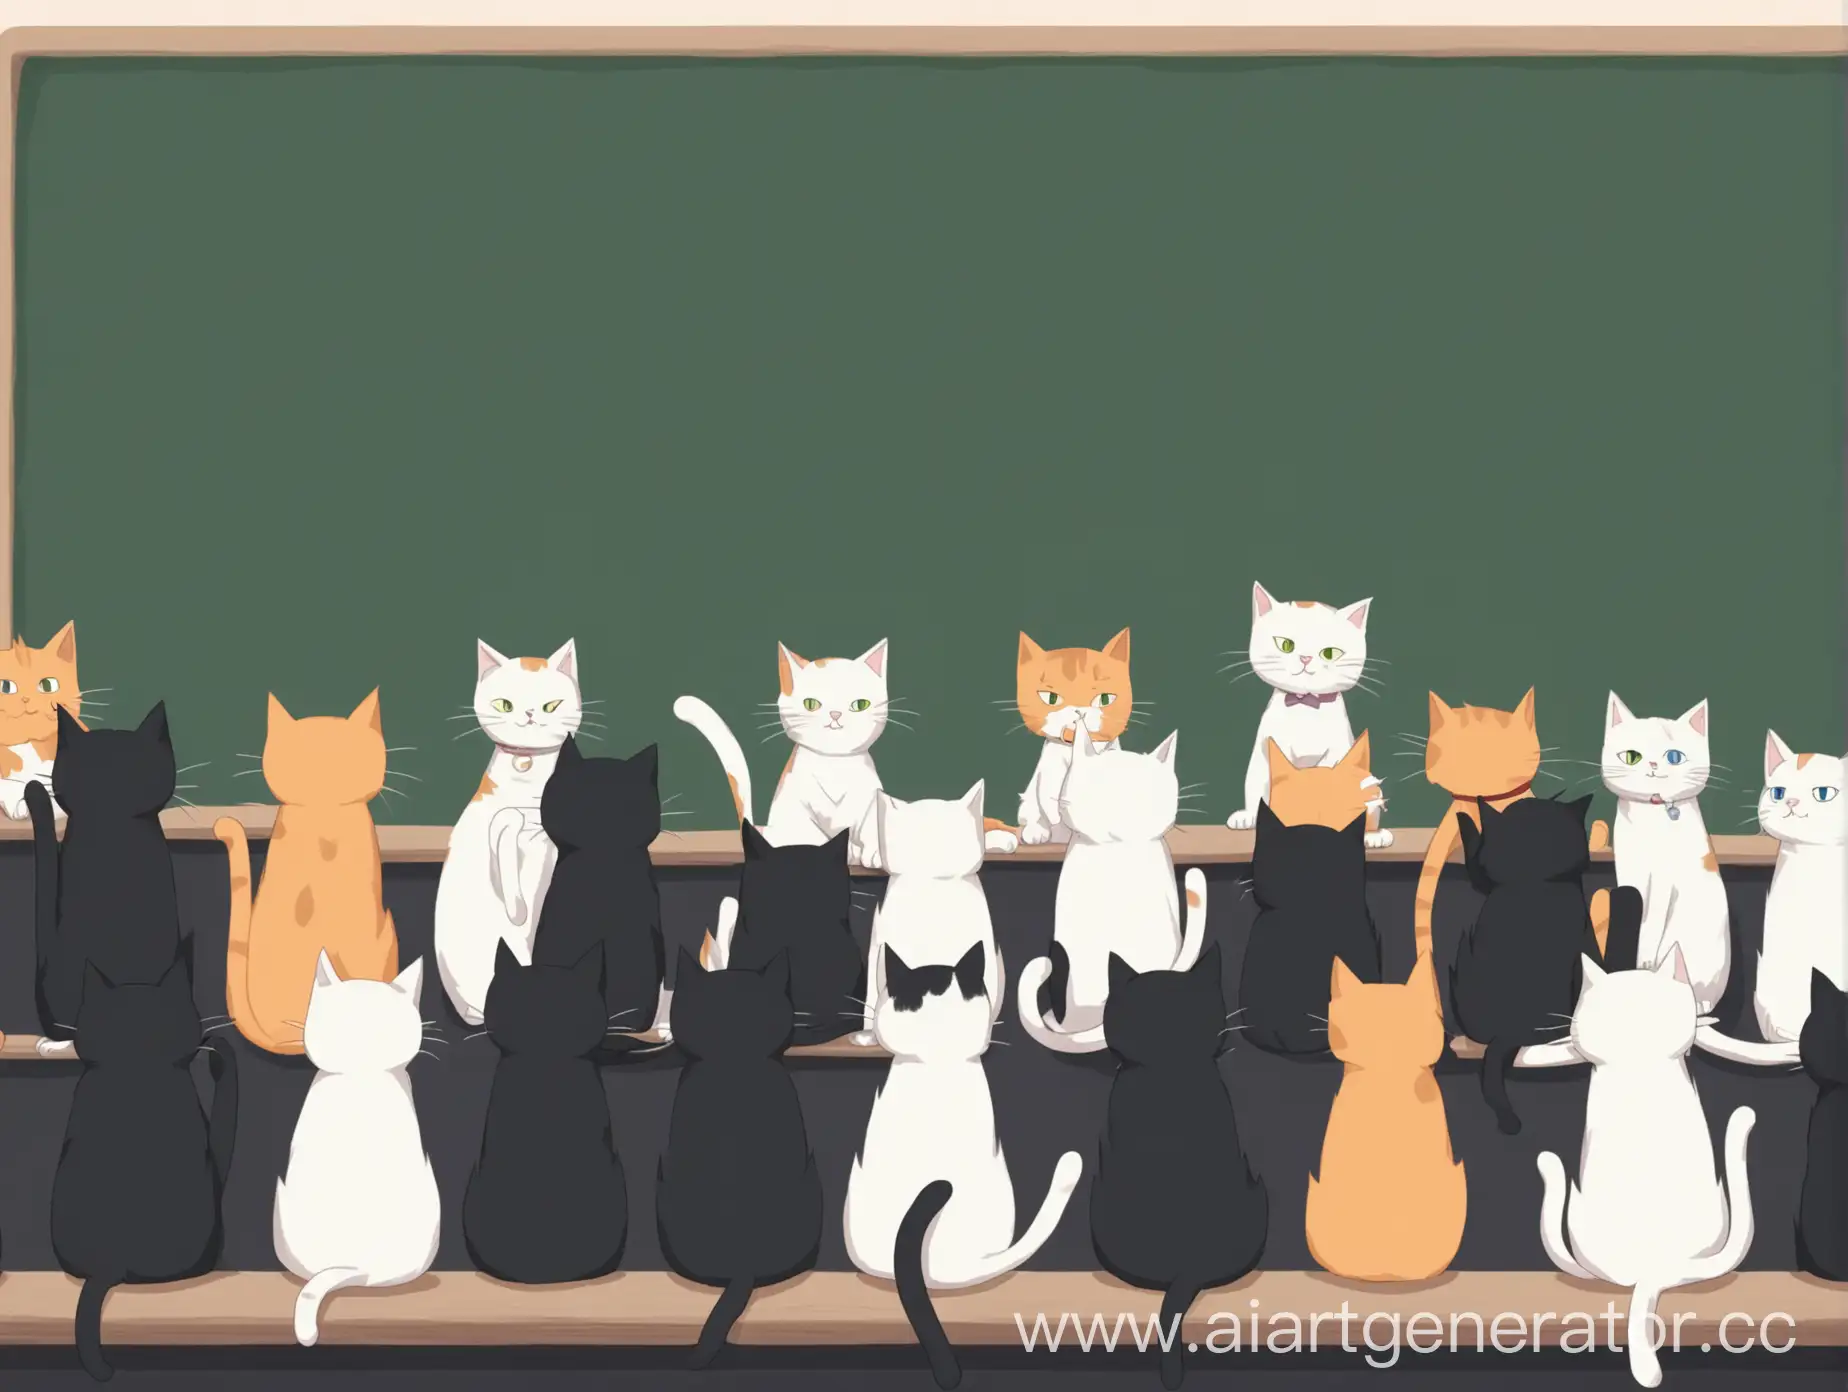 lo-fi коты учителя. 11 котов на расстоянии друг от друга на фоне школьной доски